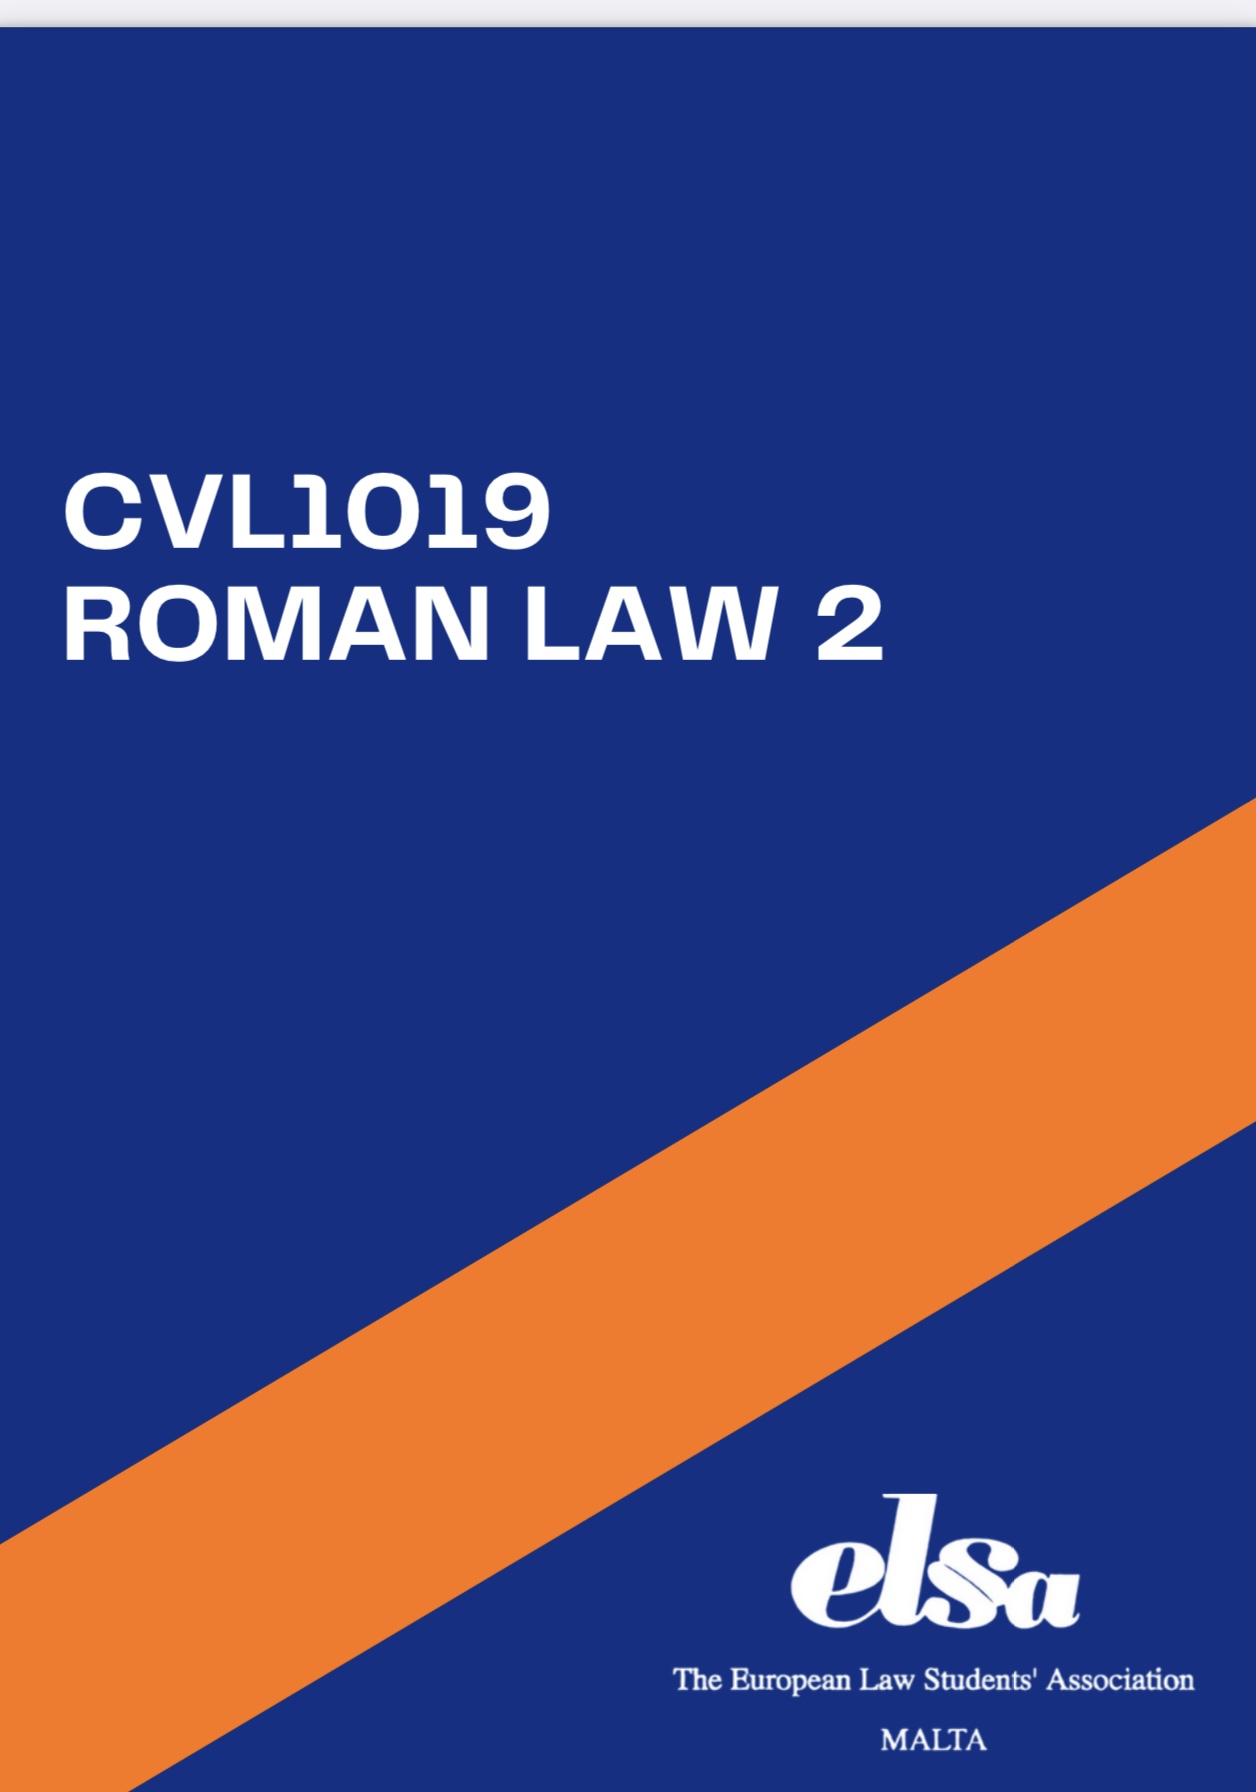 CVL1019 - Roman Law 2